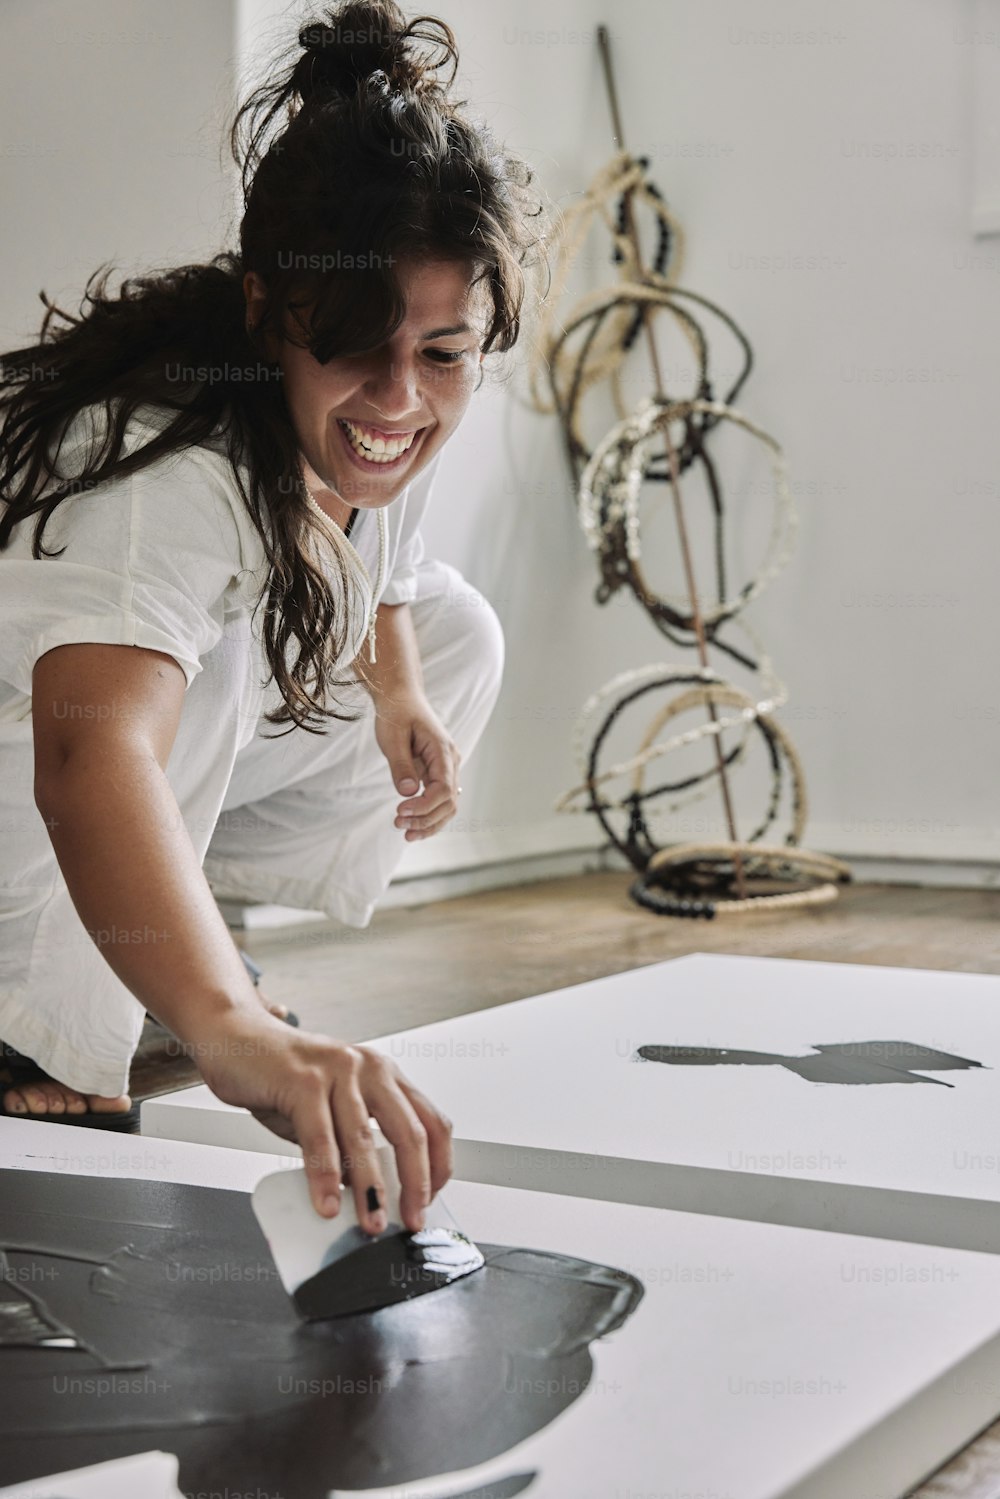 Eine Frau lächelt, während sie an einem Kunstwerk arbeitet